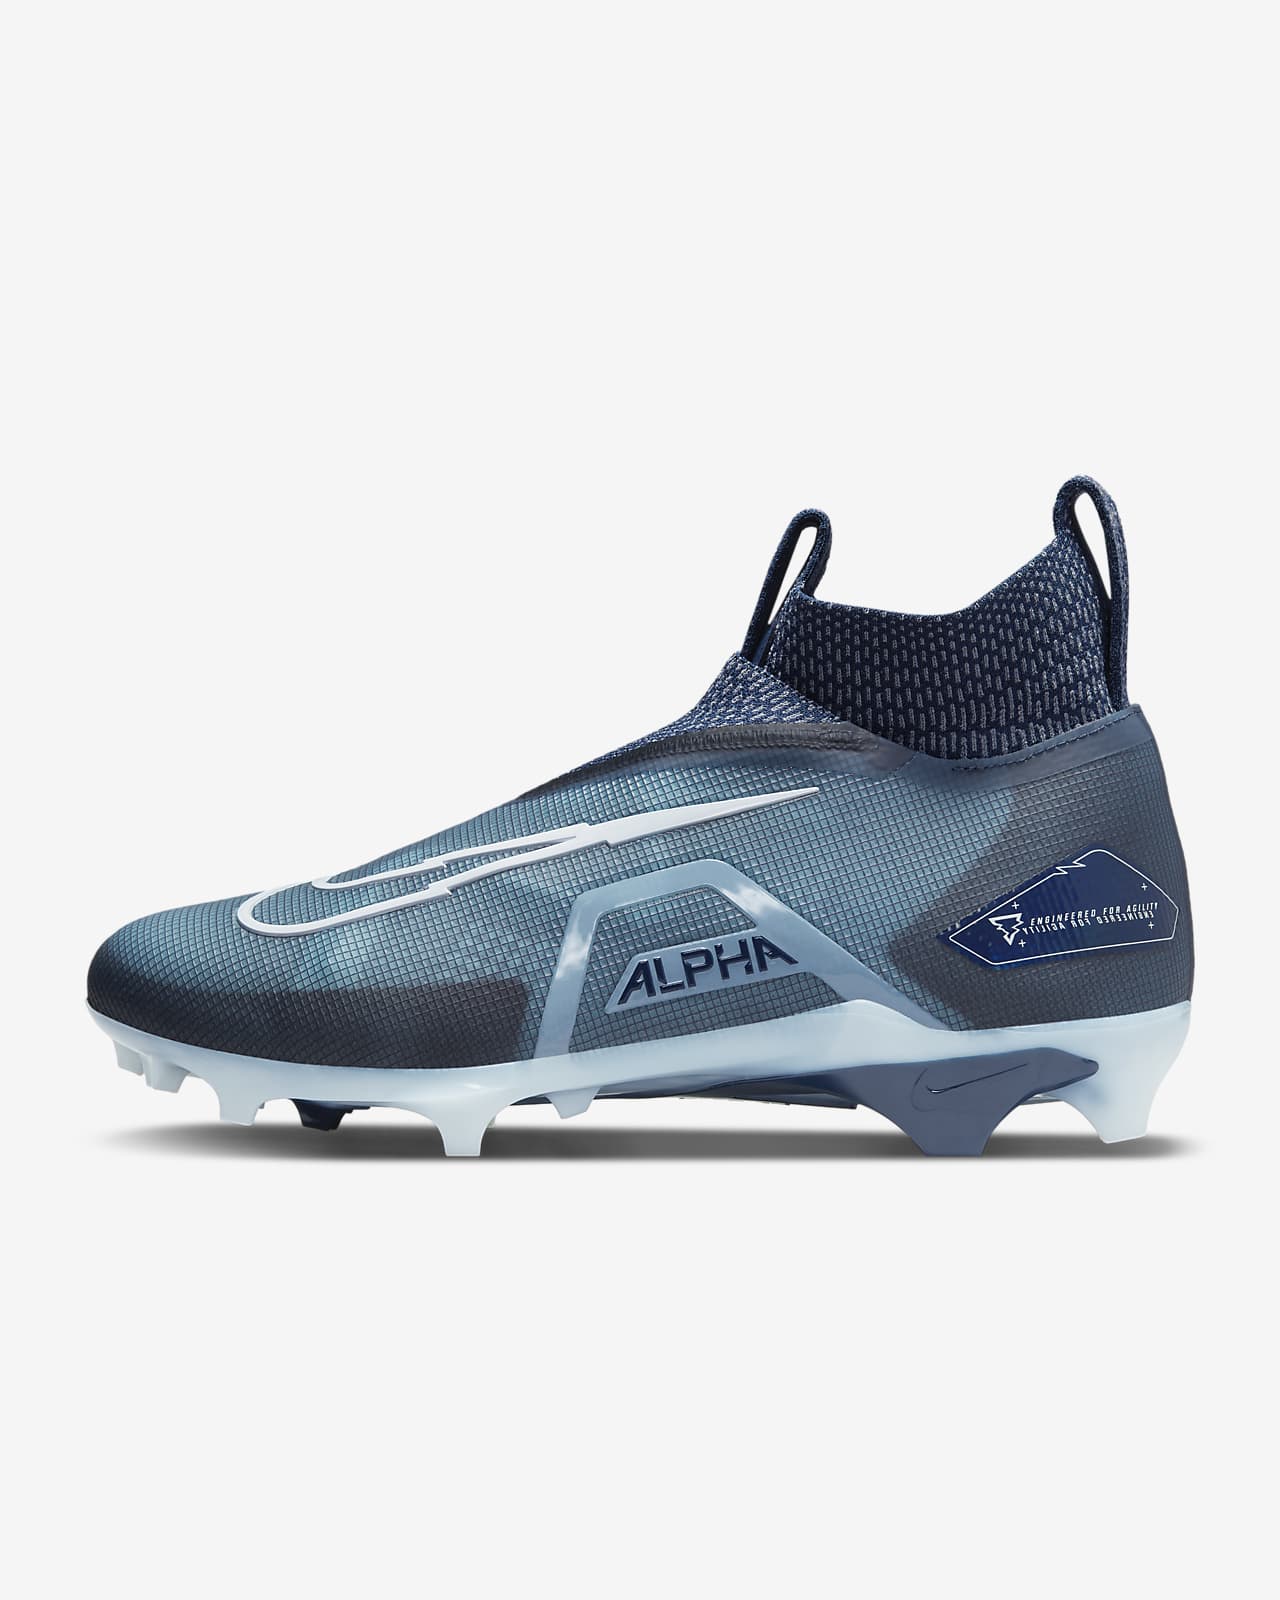 Patentar Sábana gasolina Calzado de fútbol americano Nike Alpha Menace Elite 3 para hombre. Nike.com